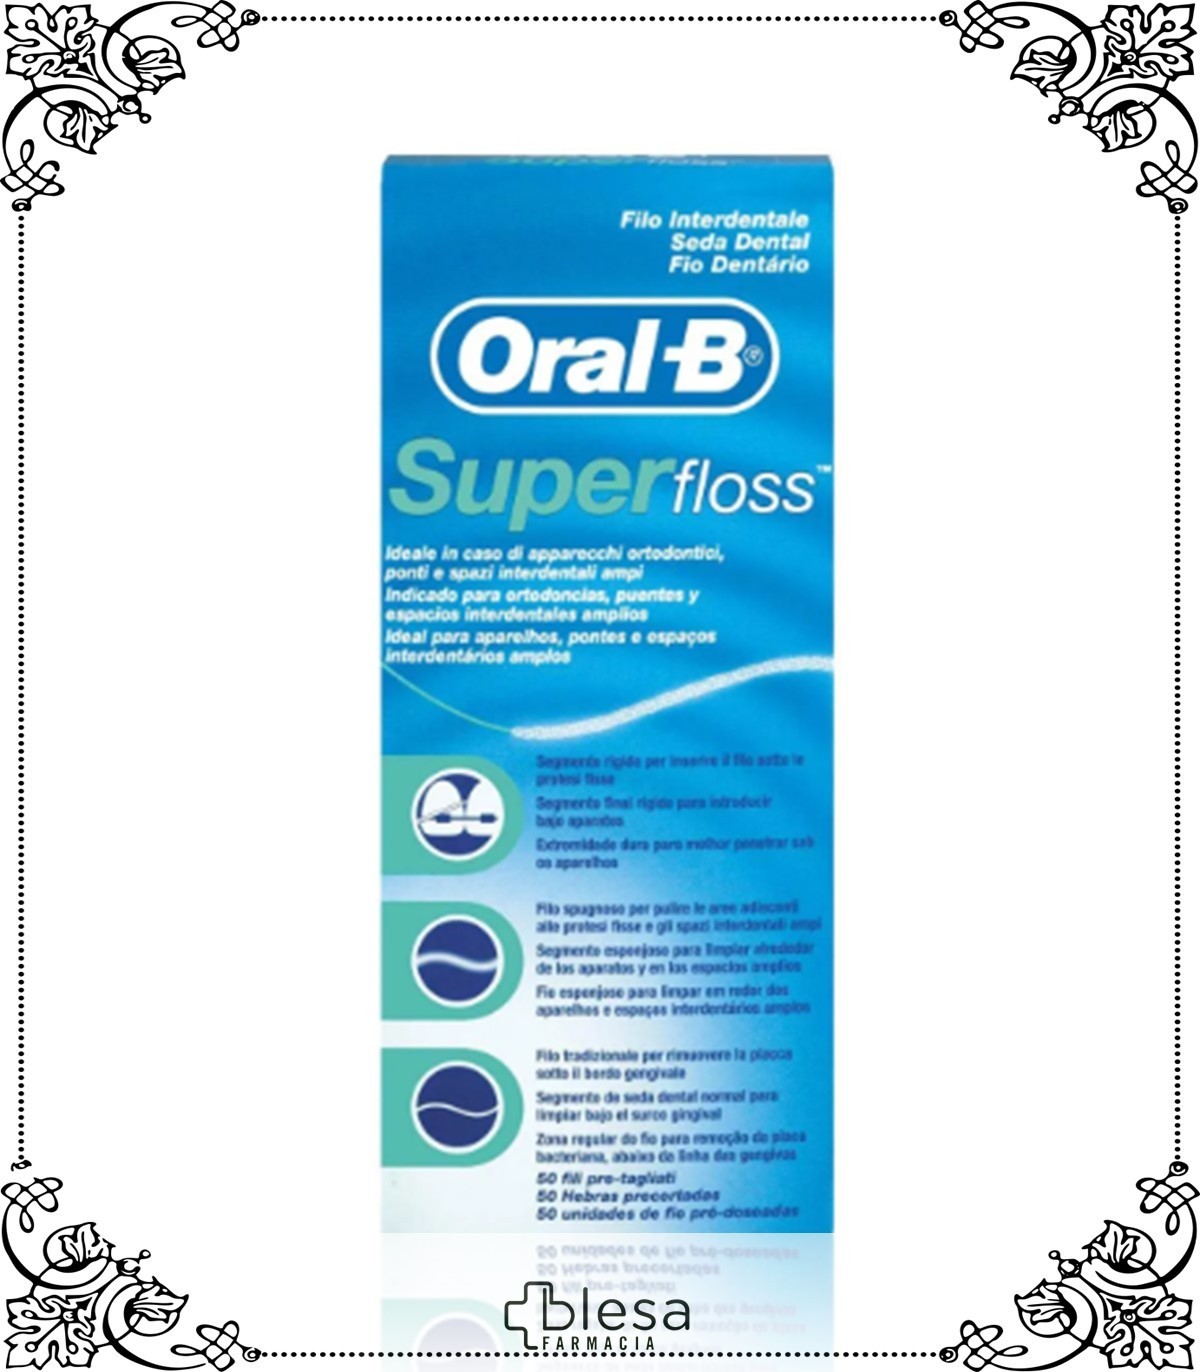 Oral-b superfloss seda dental 50 U